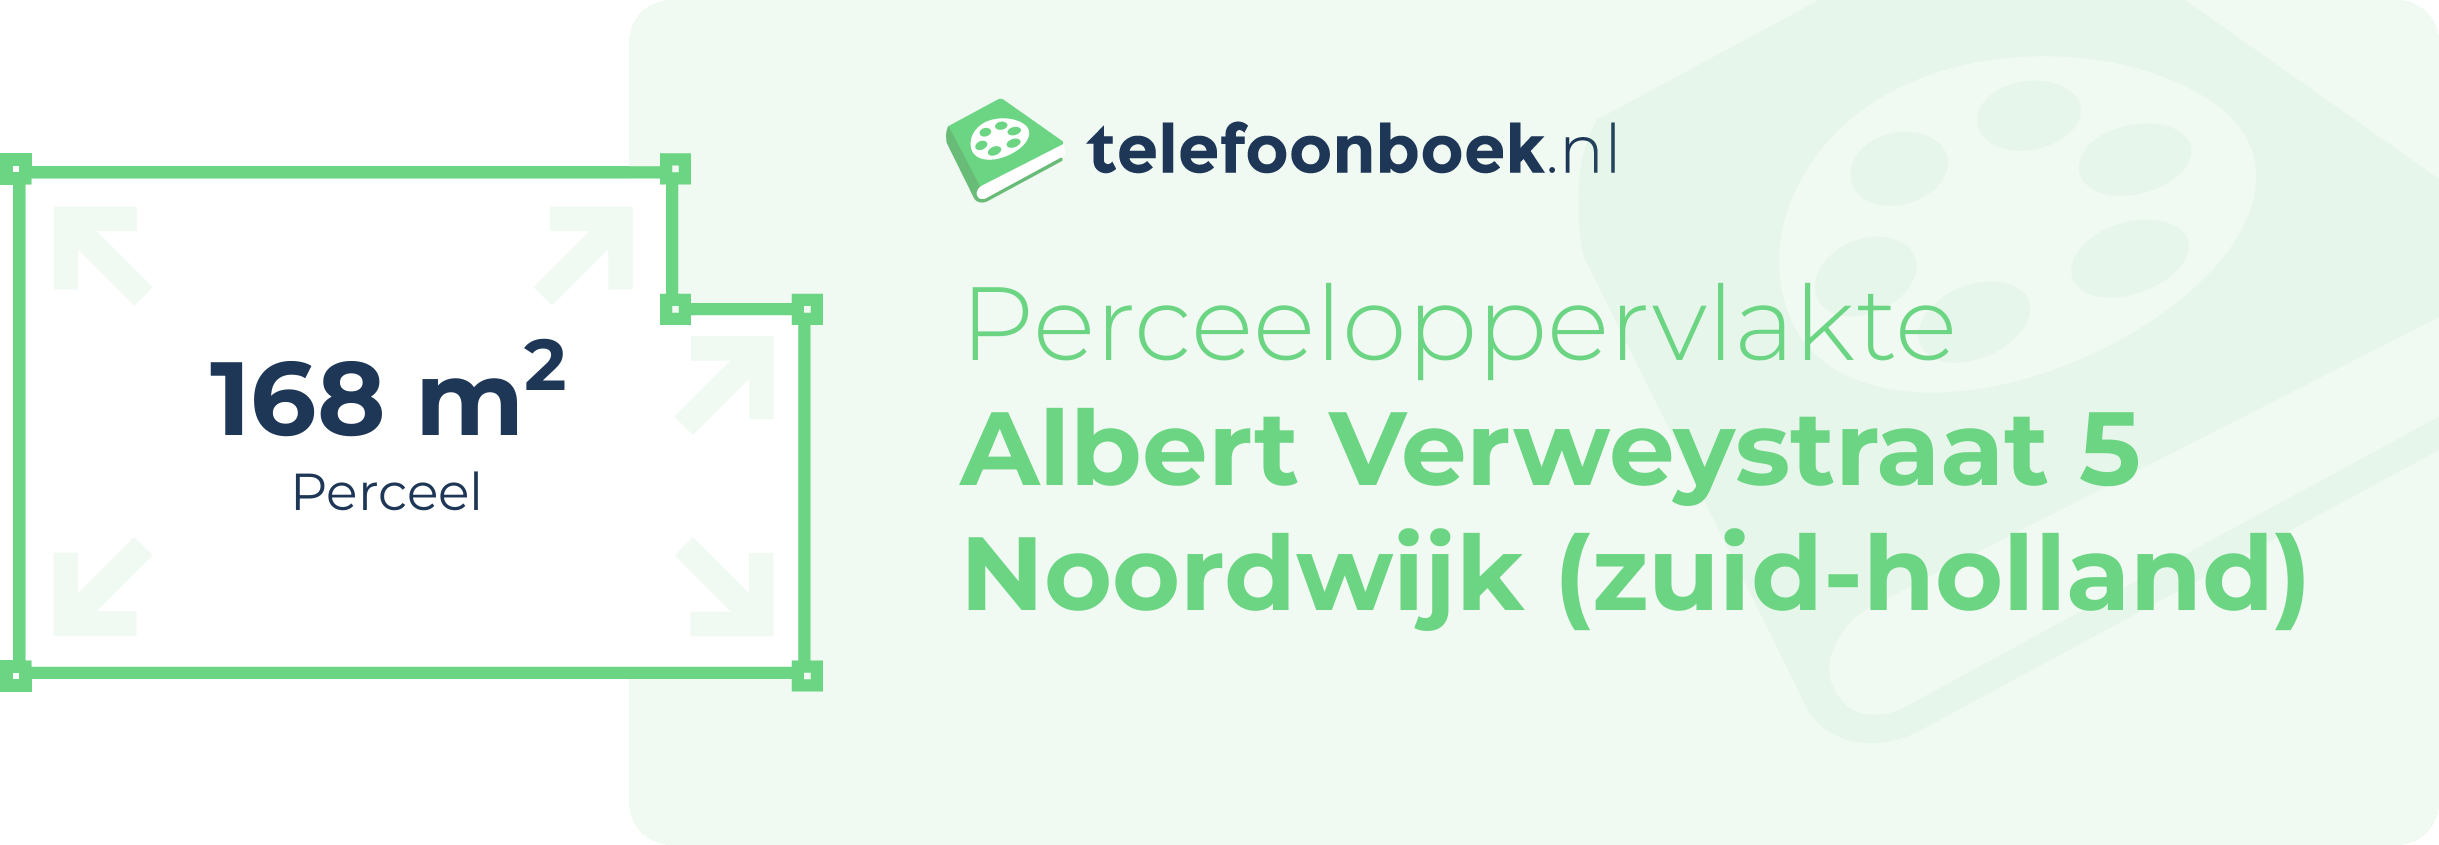 Perceeloppervlakte Albert Verweystraat 5 Noordwijk (Zuid-Holland)